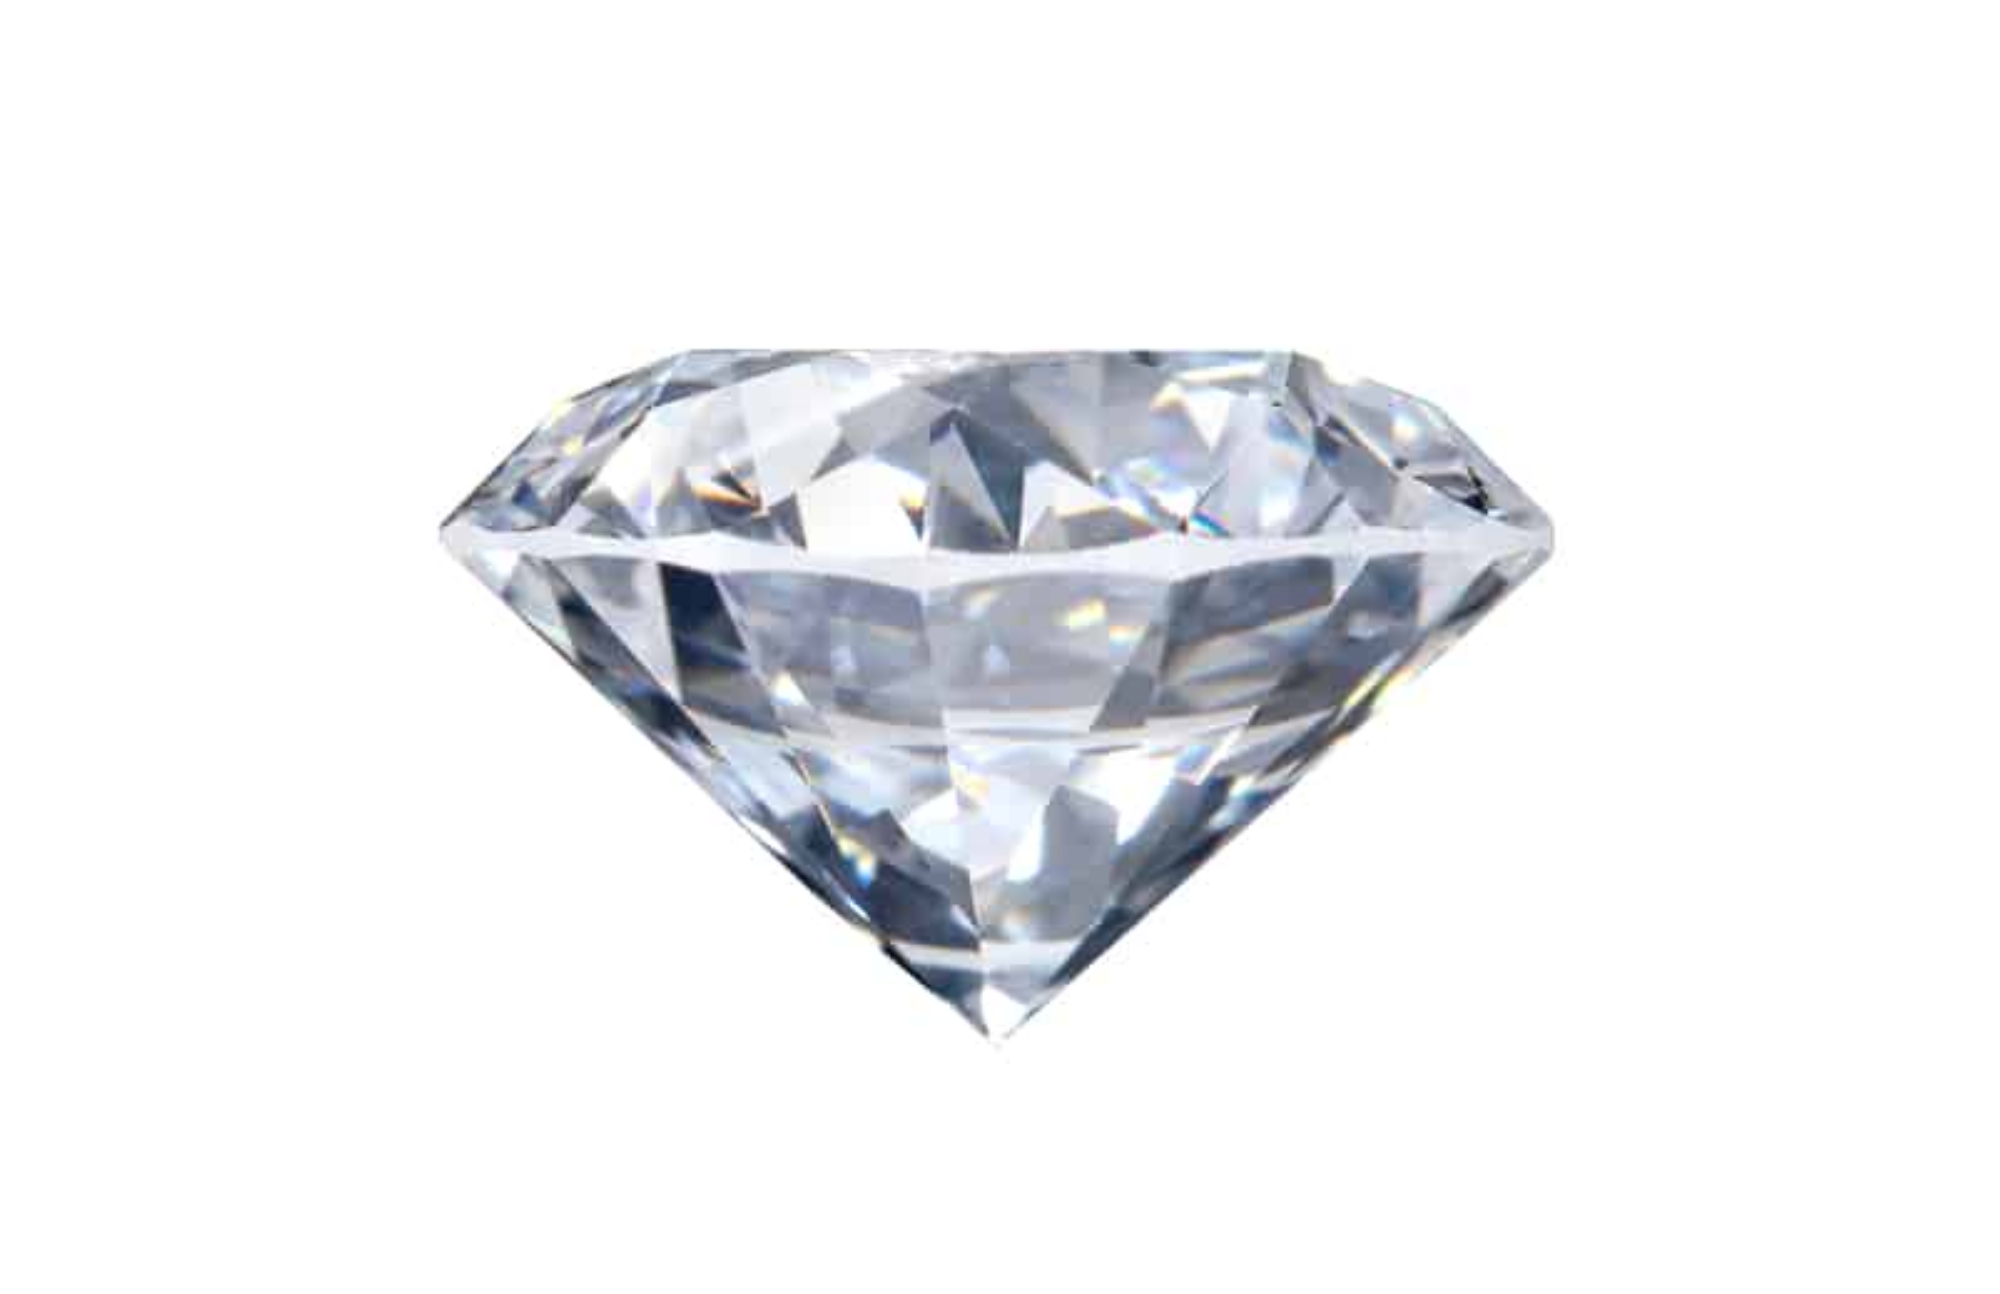 A cushion-cut diamond